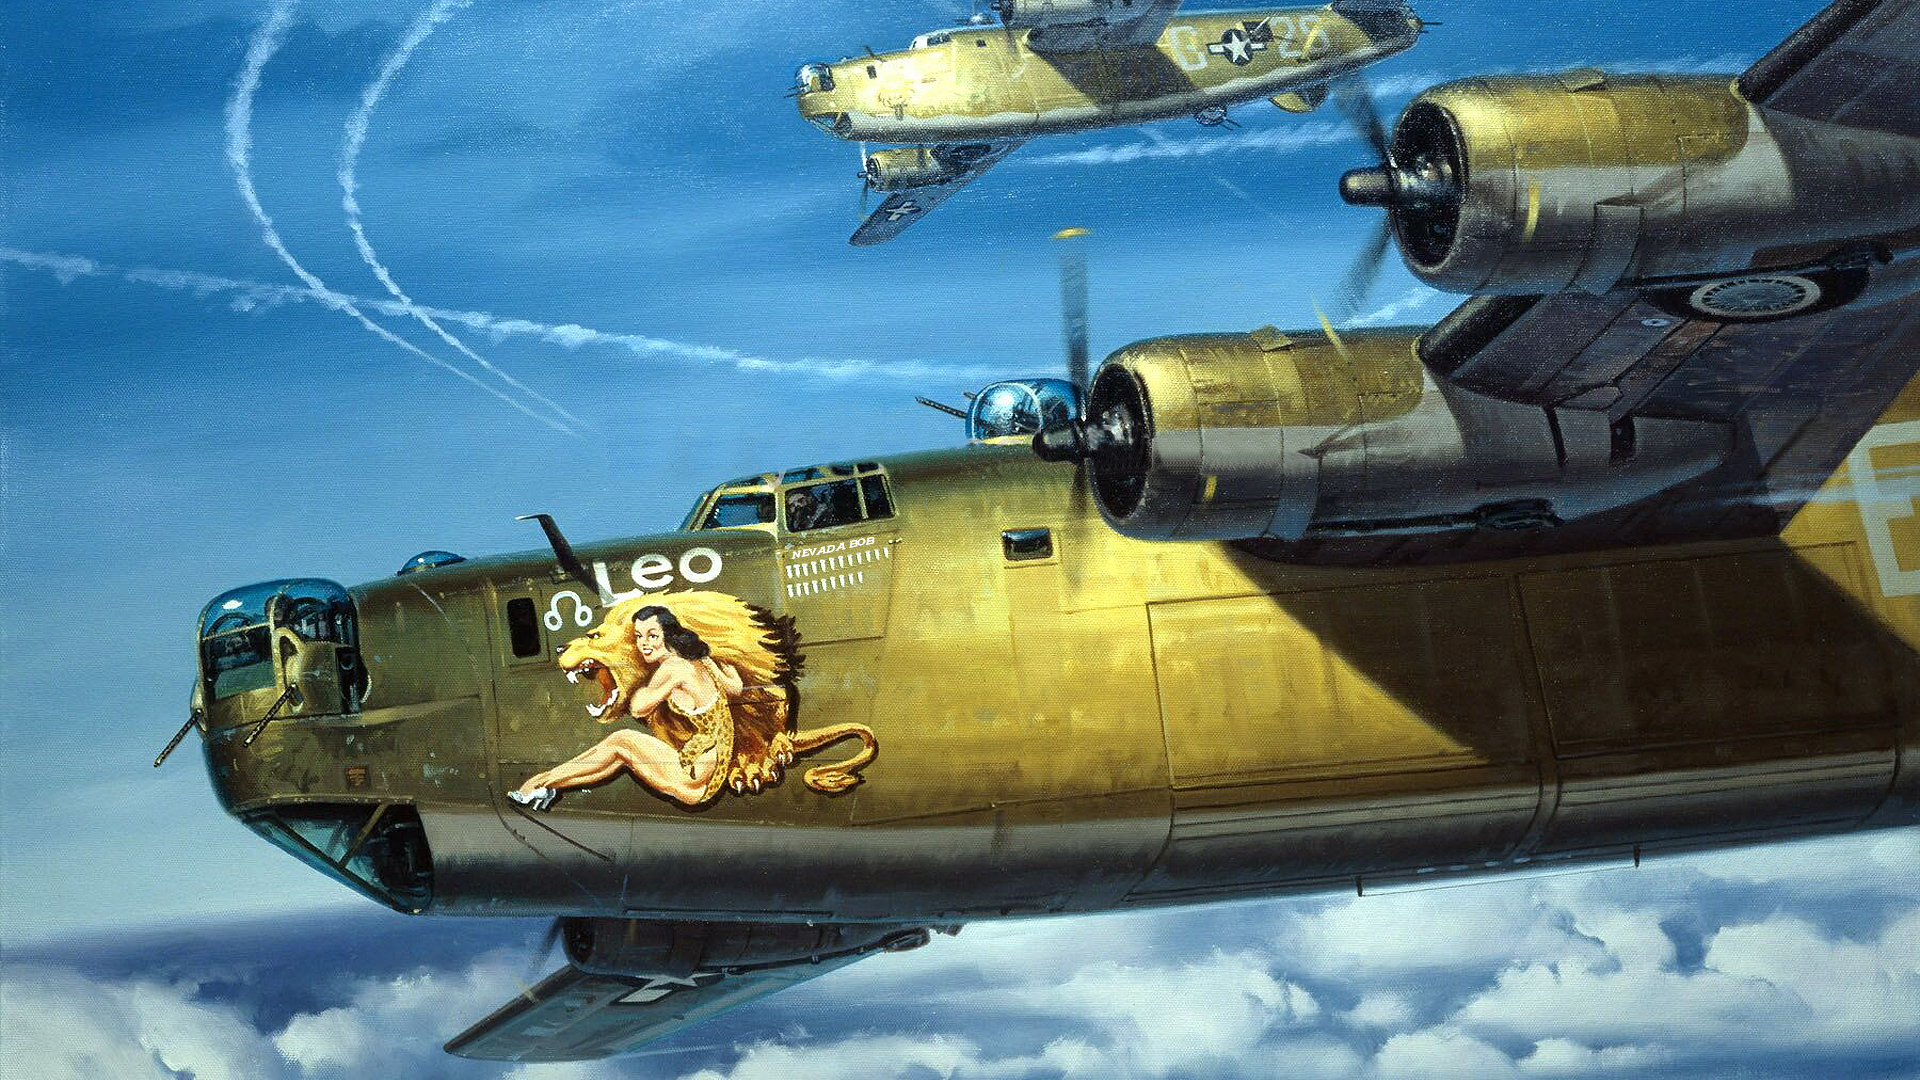 Desktop wallpaper featuring a military aircraft.